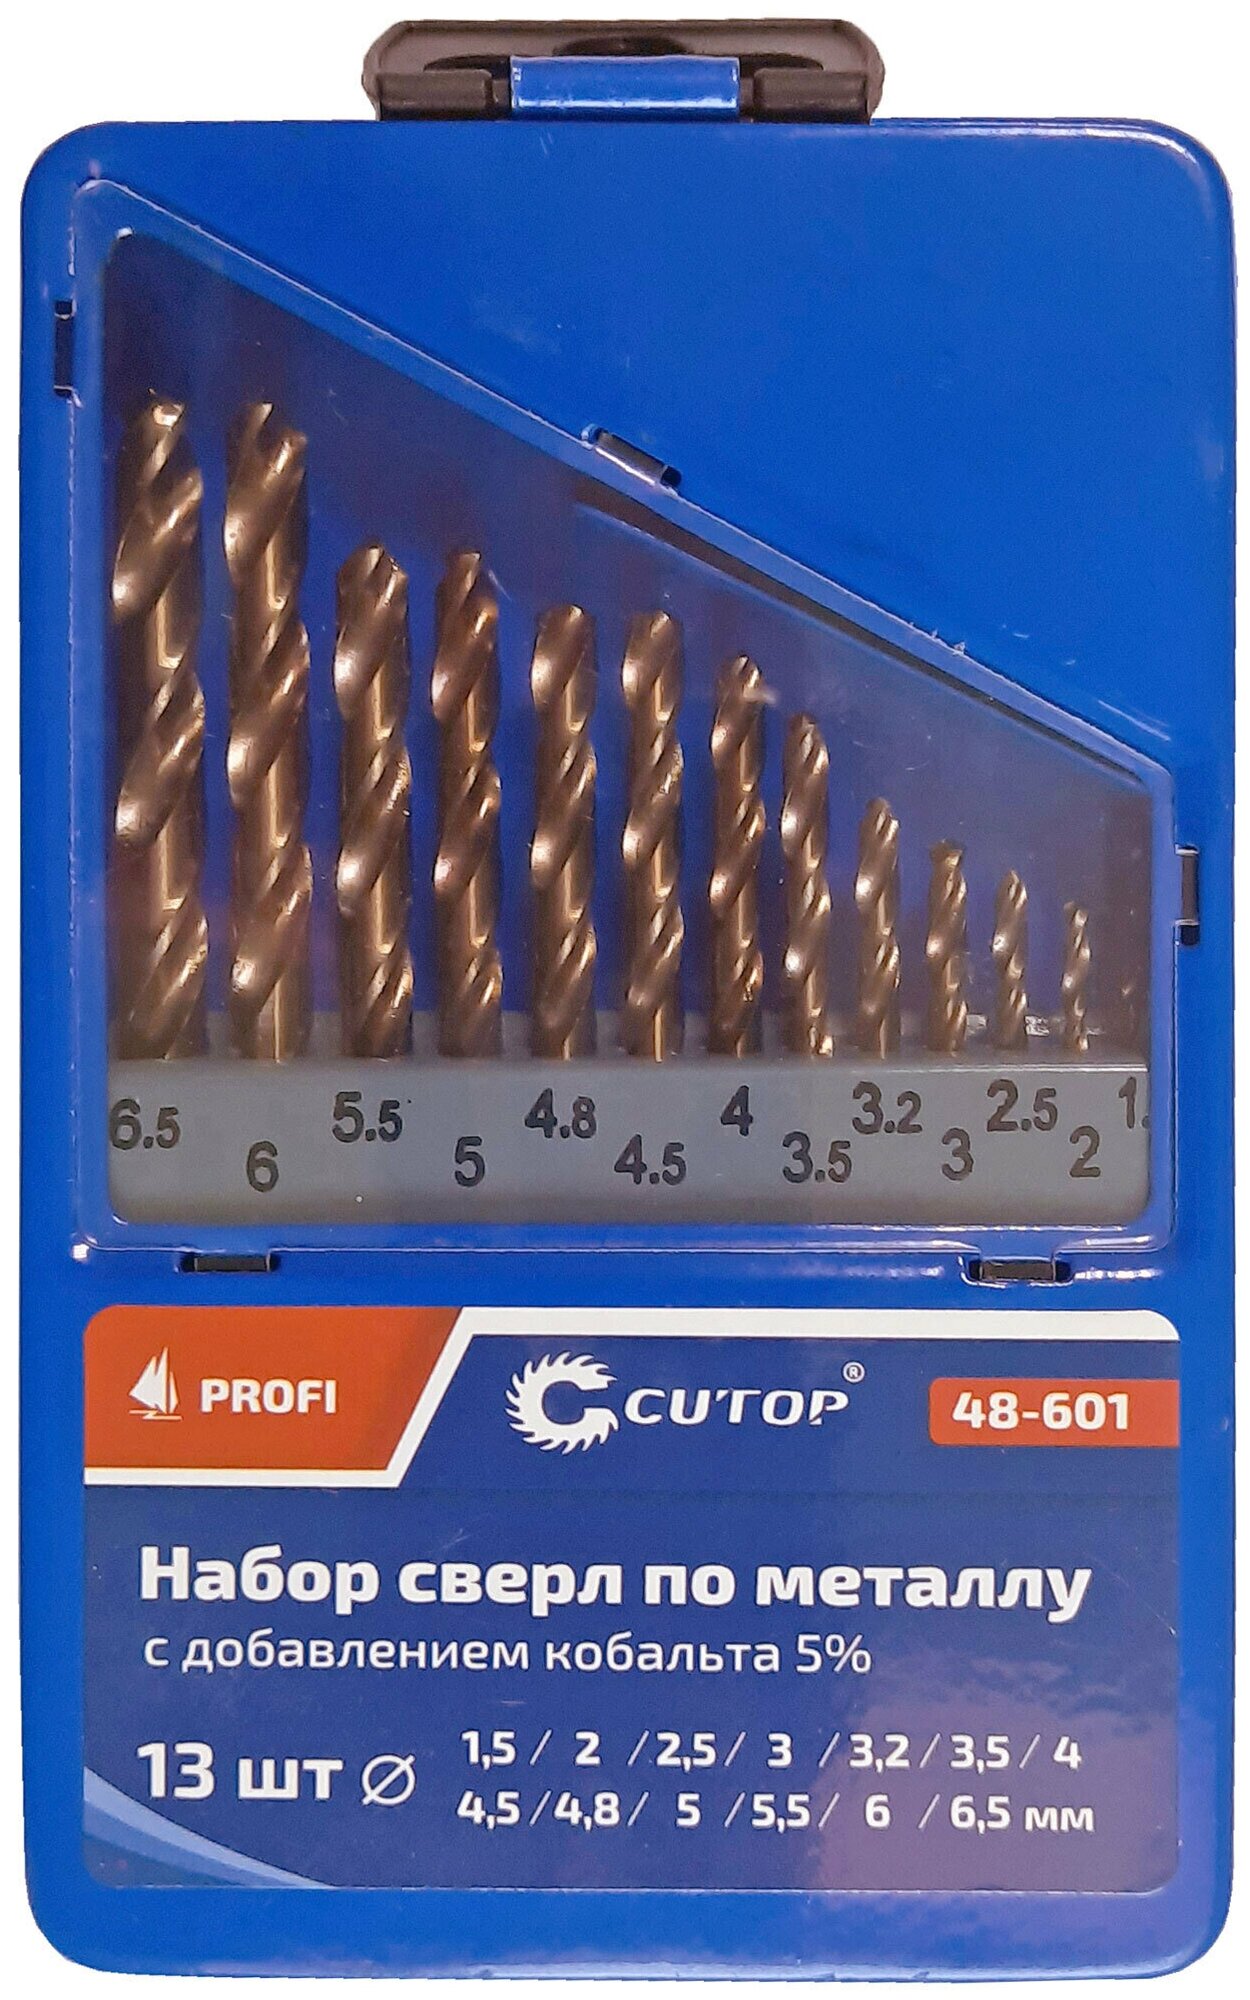 Набор сверл по металлу с кобальтом 5% в металлической коробке, 1,5-6,5 мм (через 0,5 мм + 3,2 мм, 4,8 мм), 13 шт, Cutop Profi 48-601